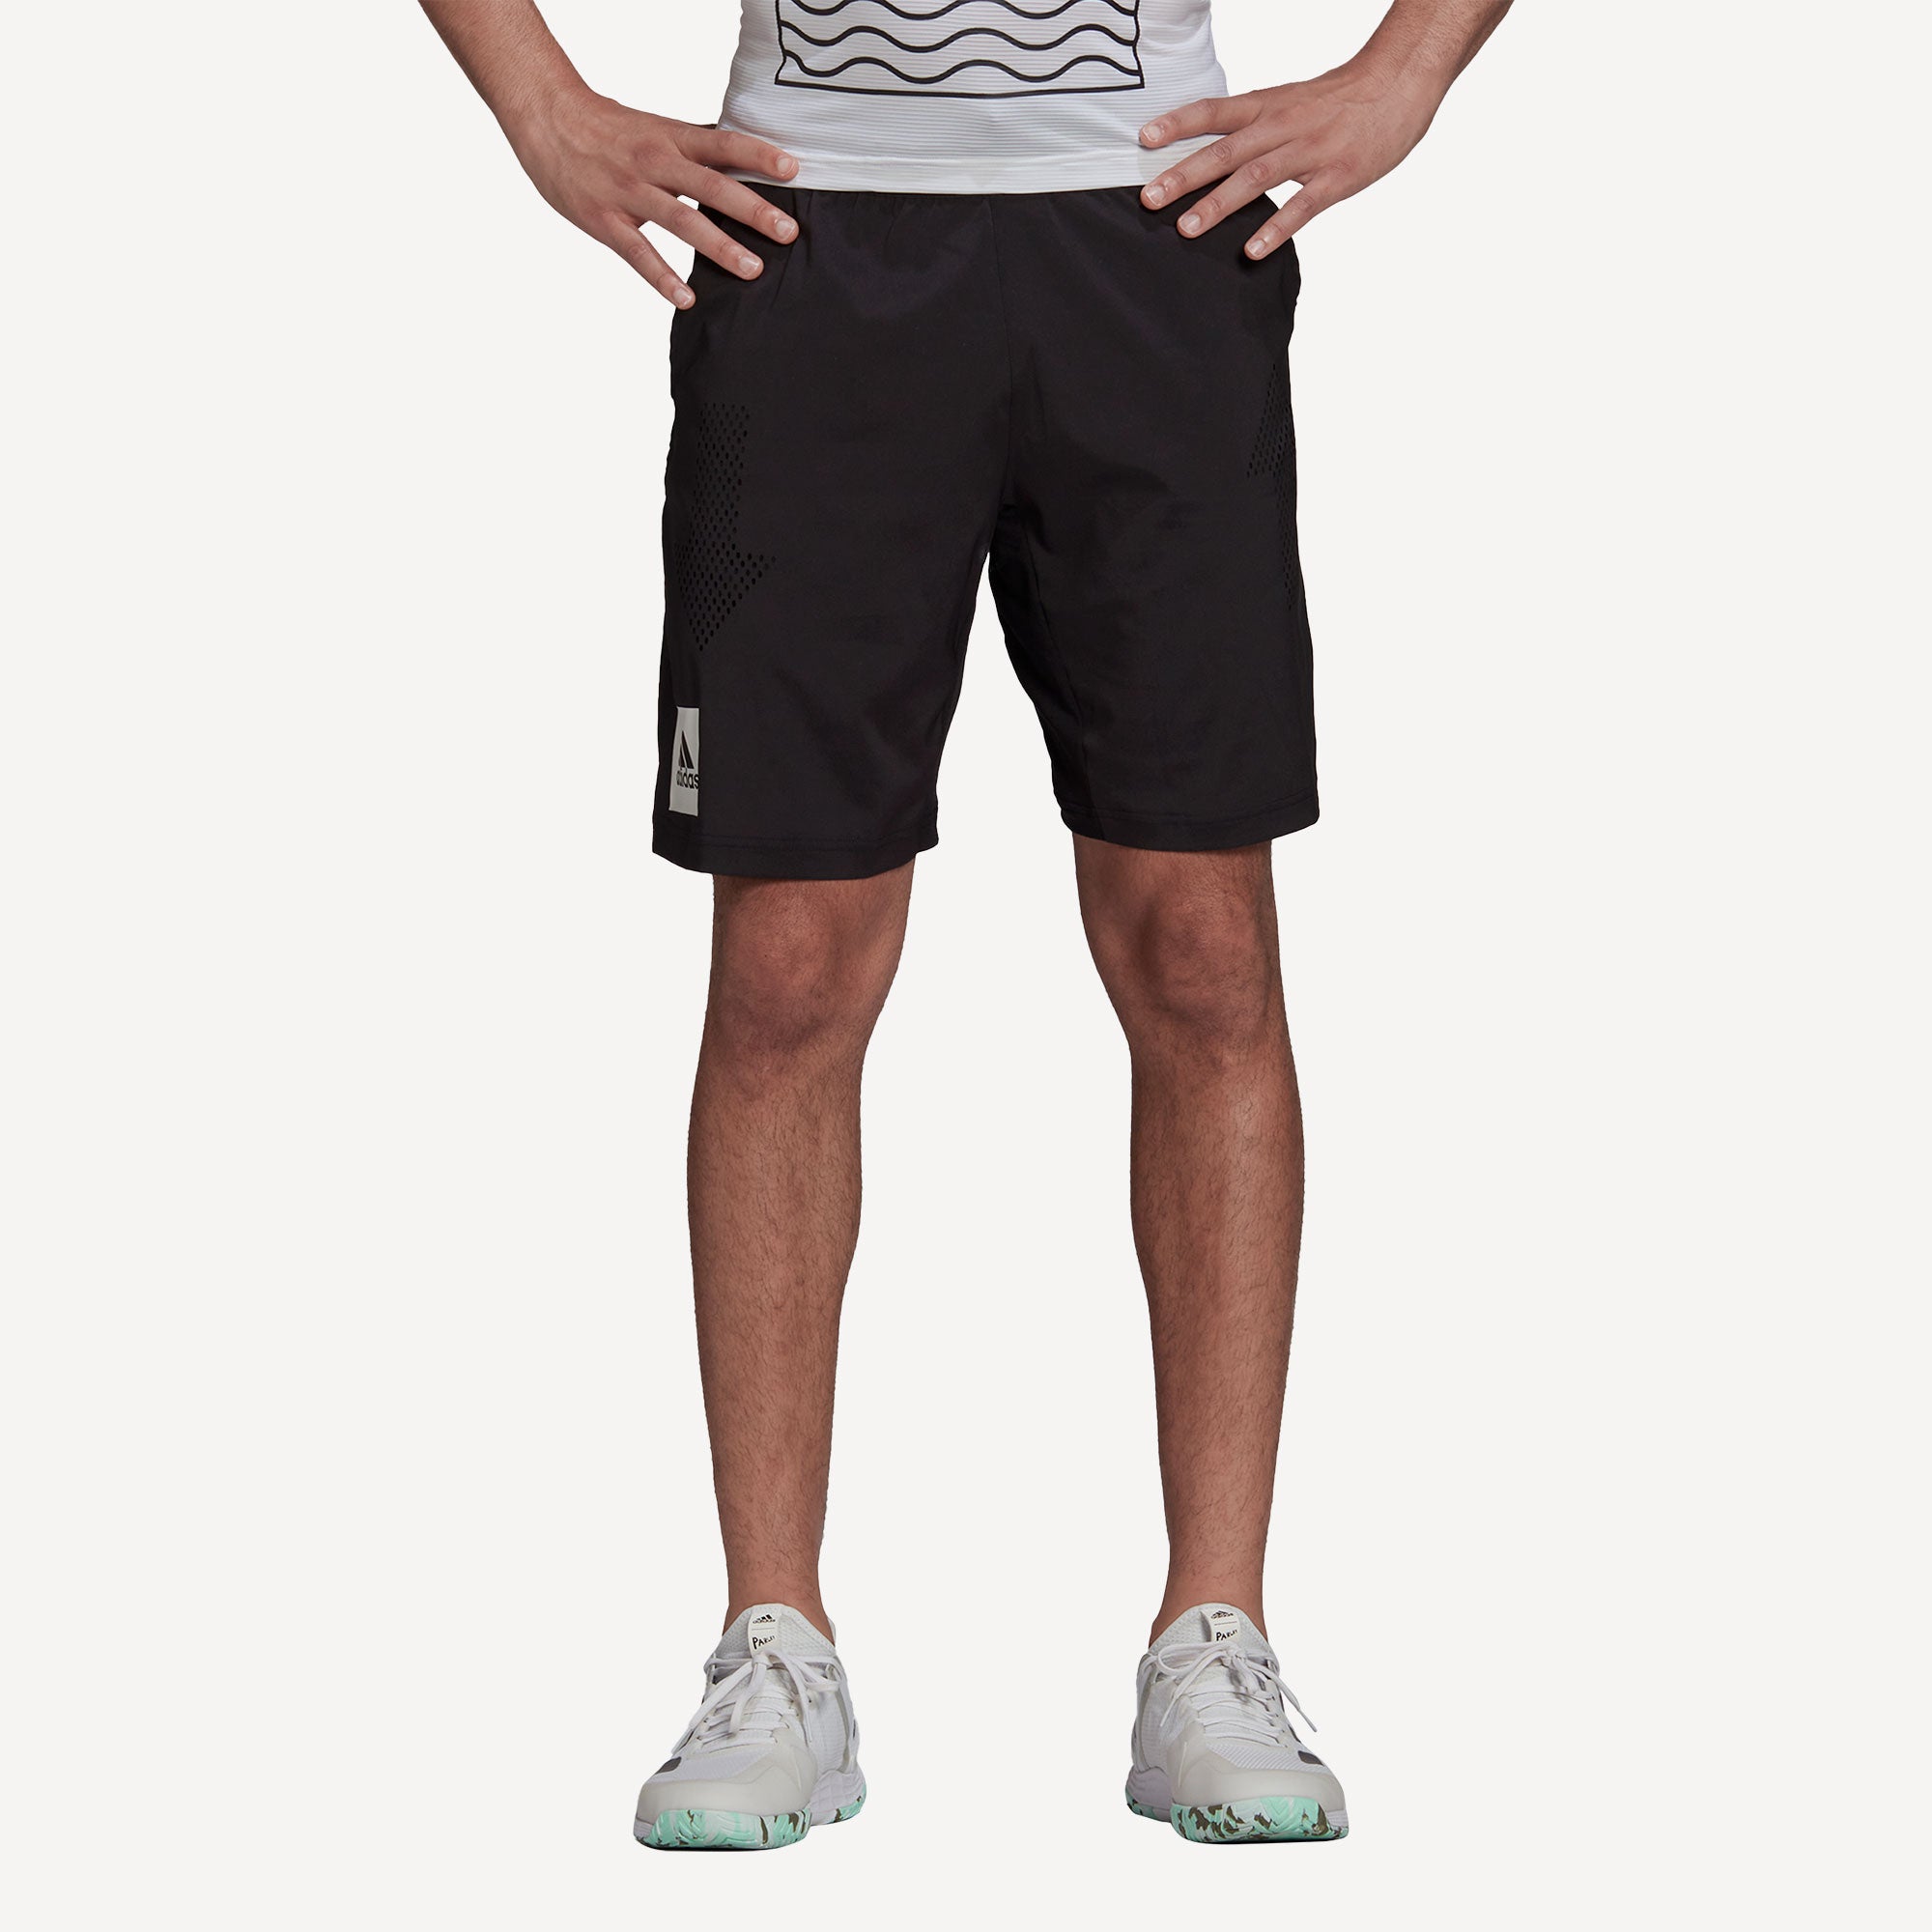 adidas Paris Ergo Men's 9-Inch Tennis Shorts Black (1)